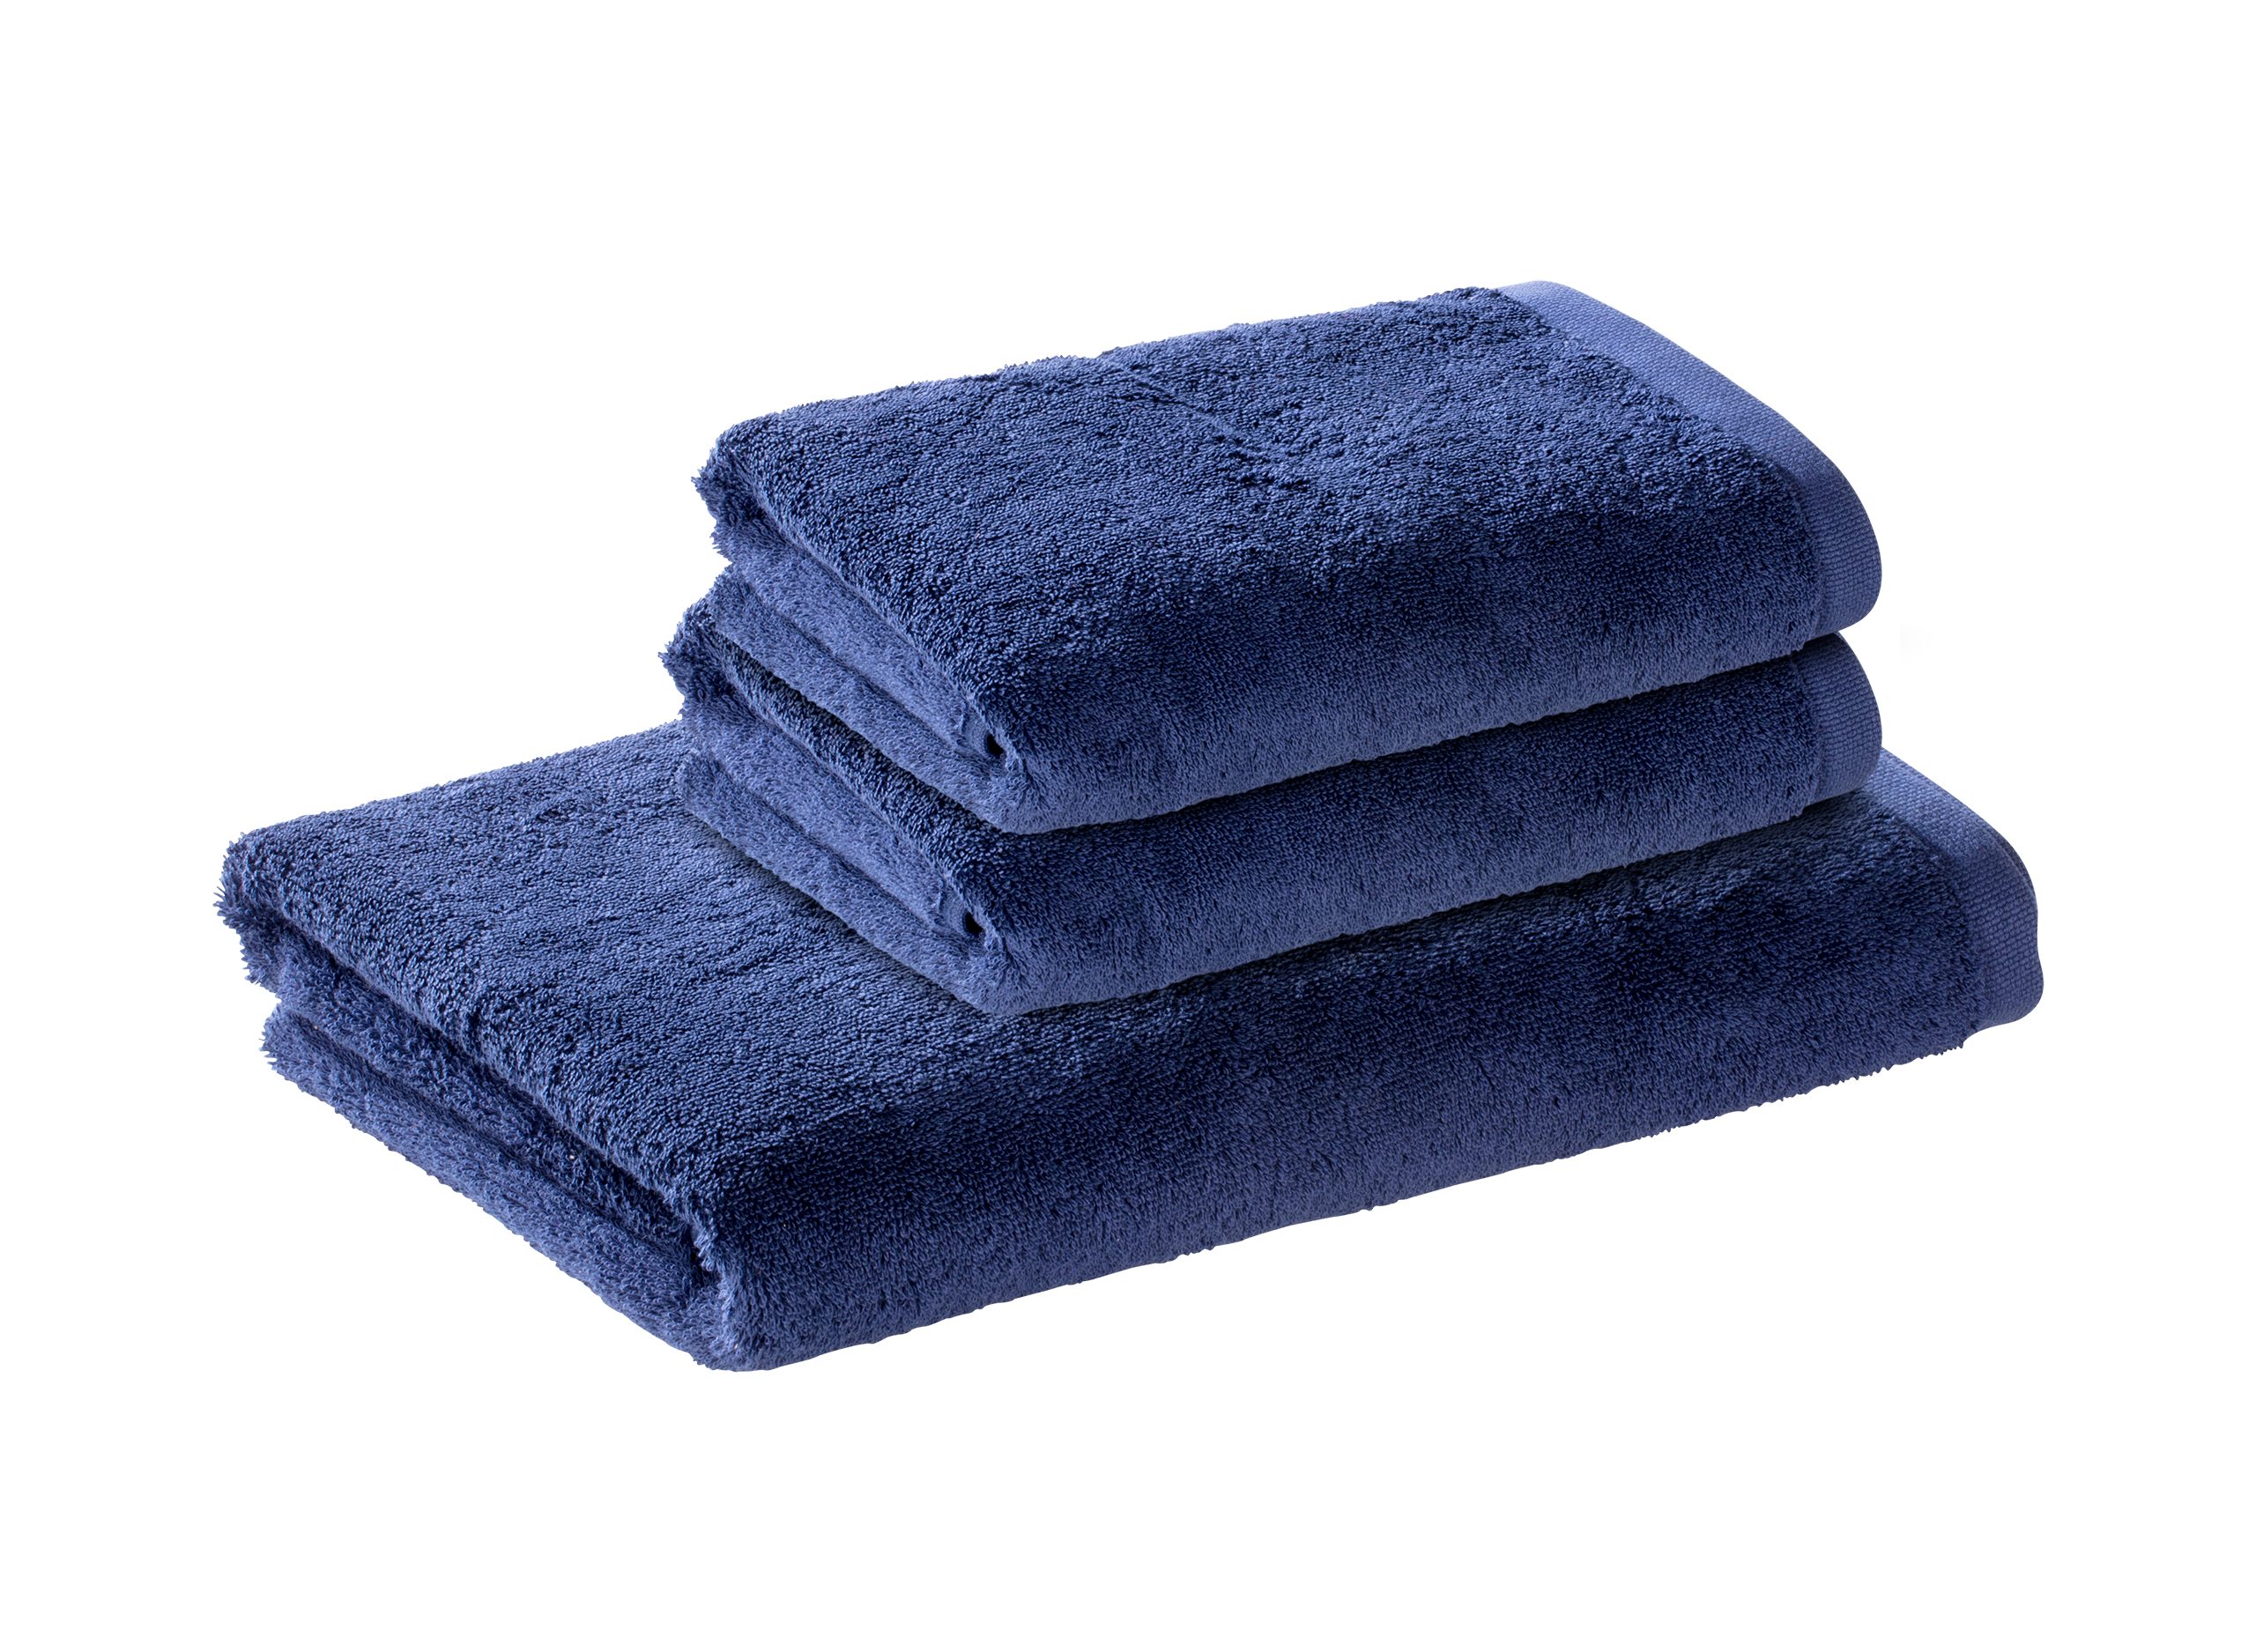 Bomlins Handtuch Set Handtücher aus 100% original ägyptische GIZA Baumwolle 650 g/m², (Royal Set, 3-tlg), Kleines deutsches Familienunternehmen -> Spüren Sie die Qualität